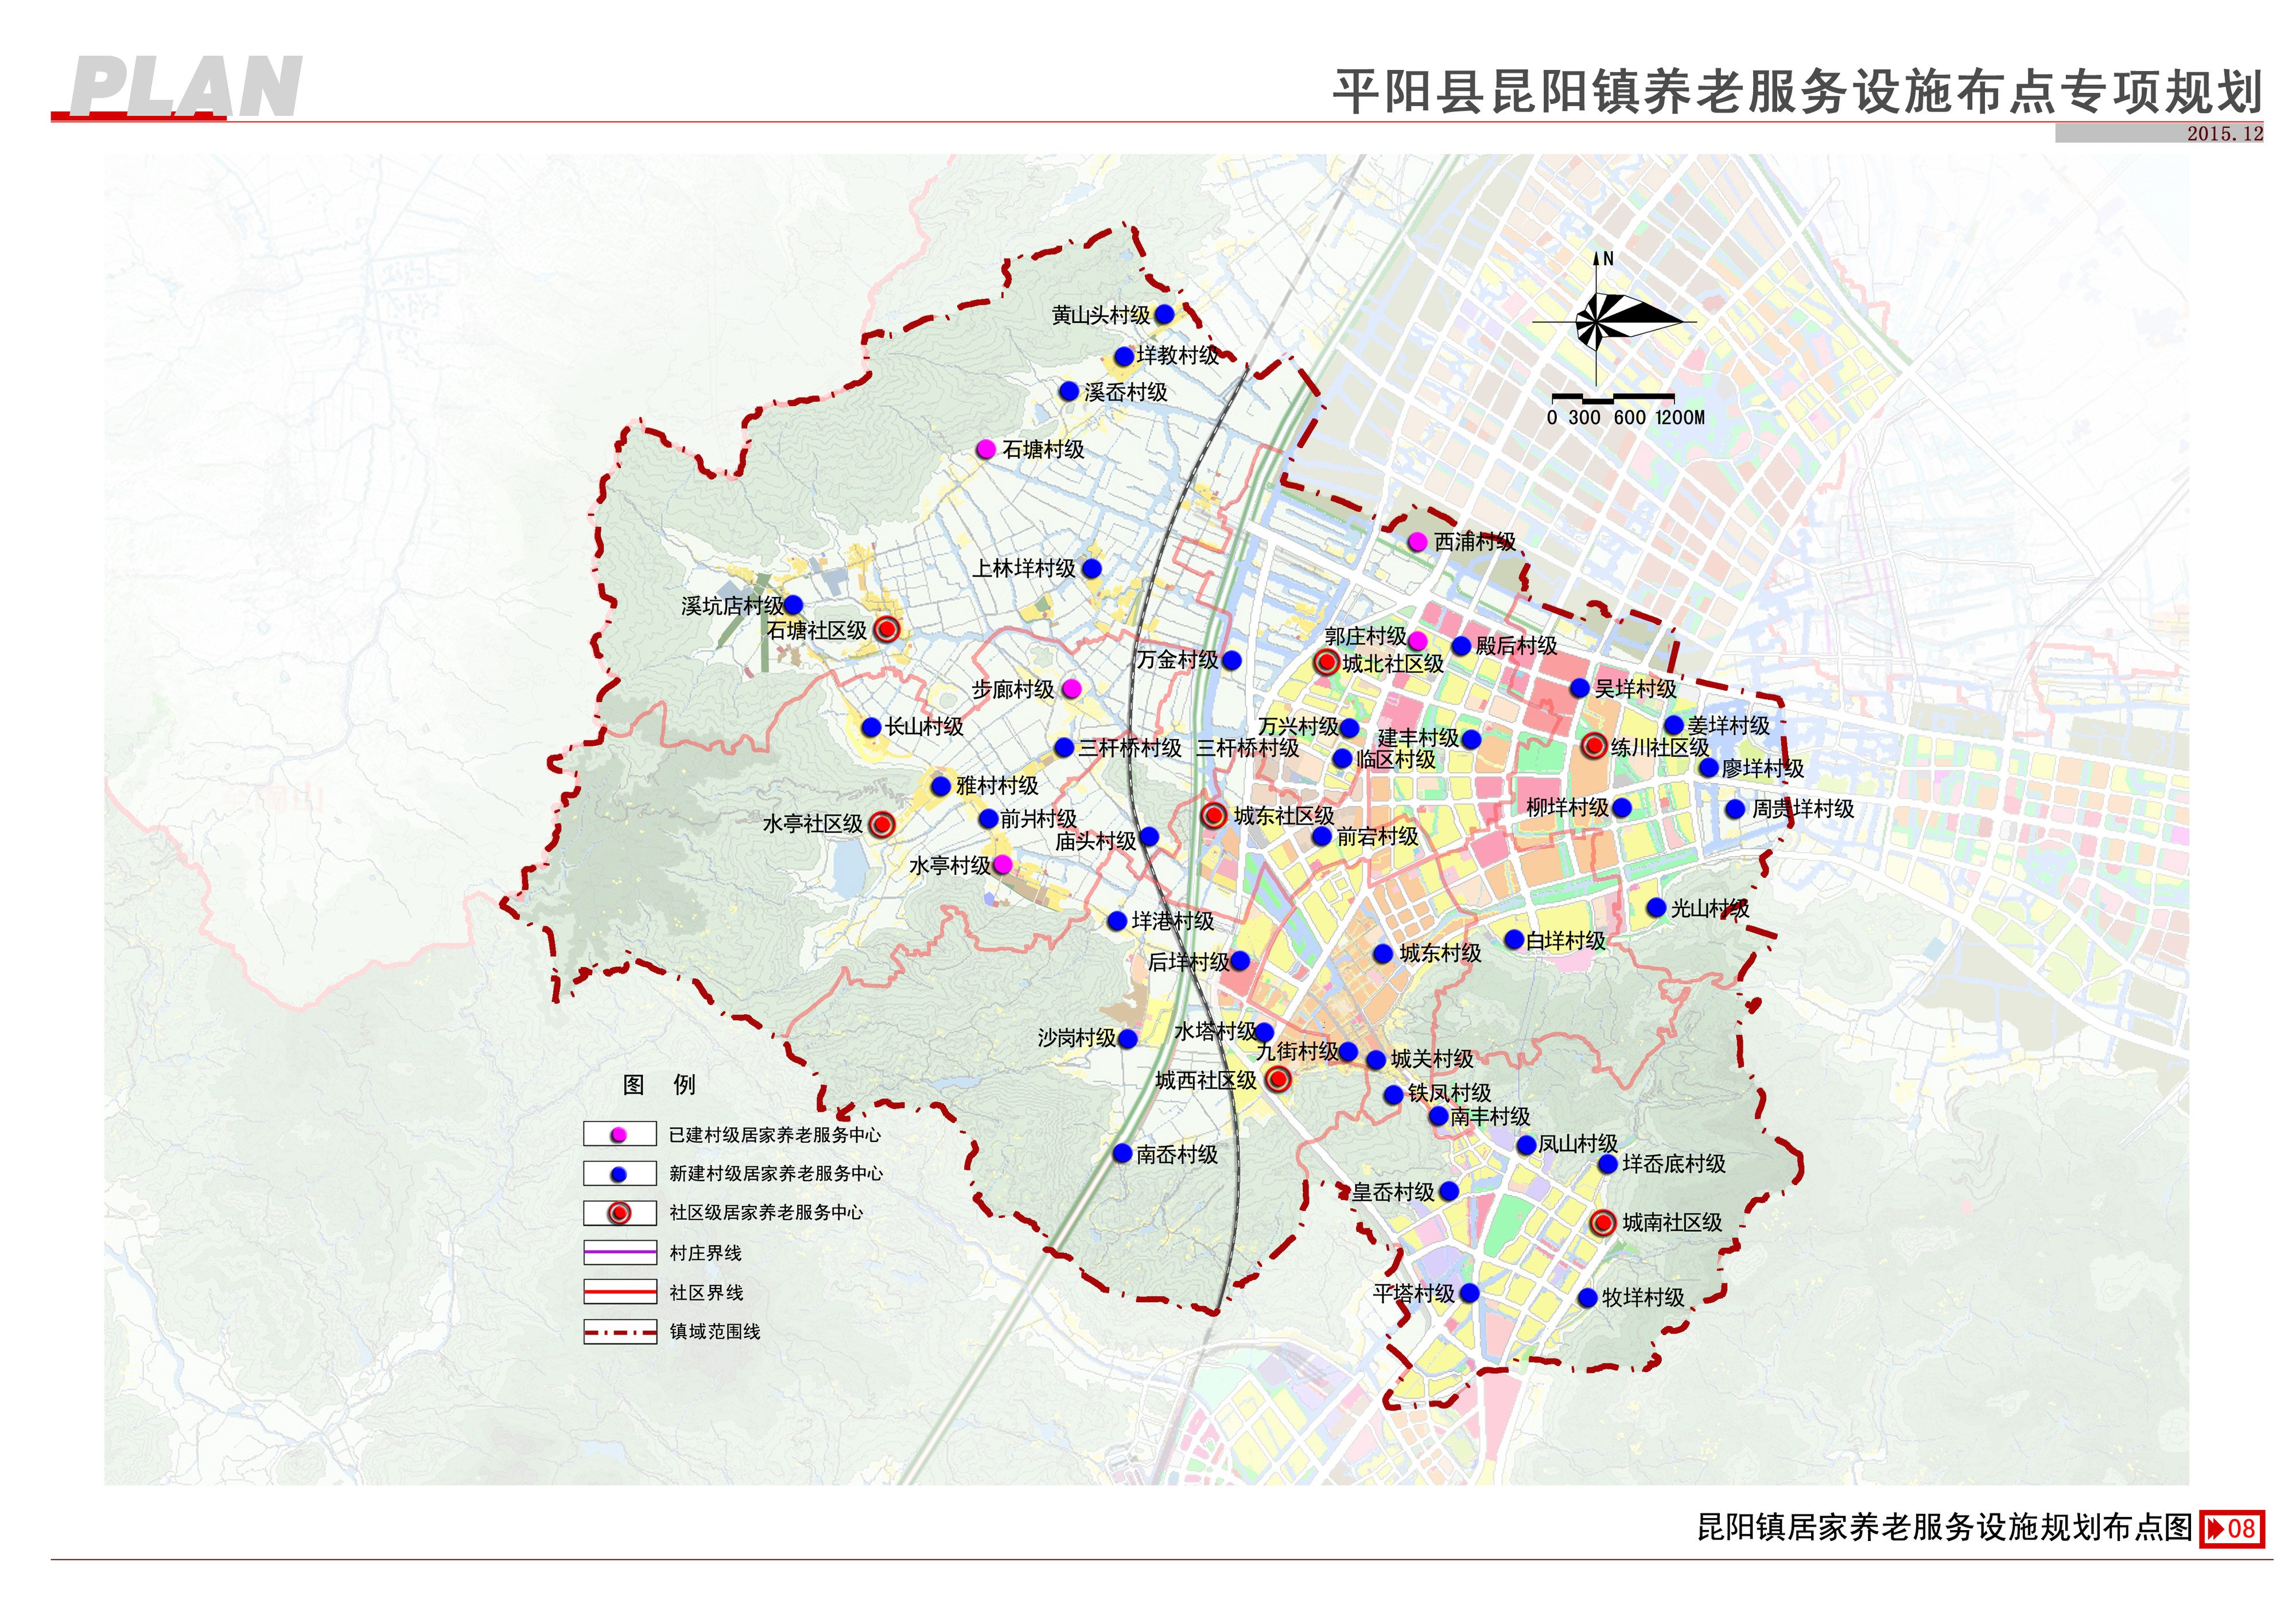 平阳县昆阳镇养老服务设施布点专项规划草案公示